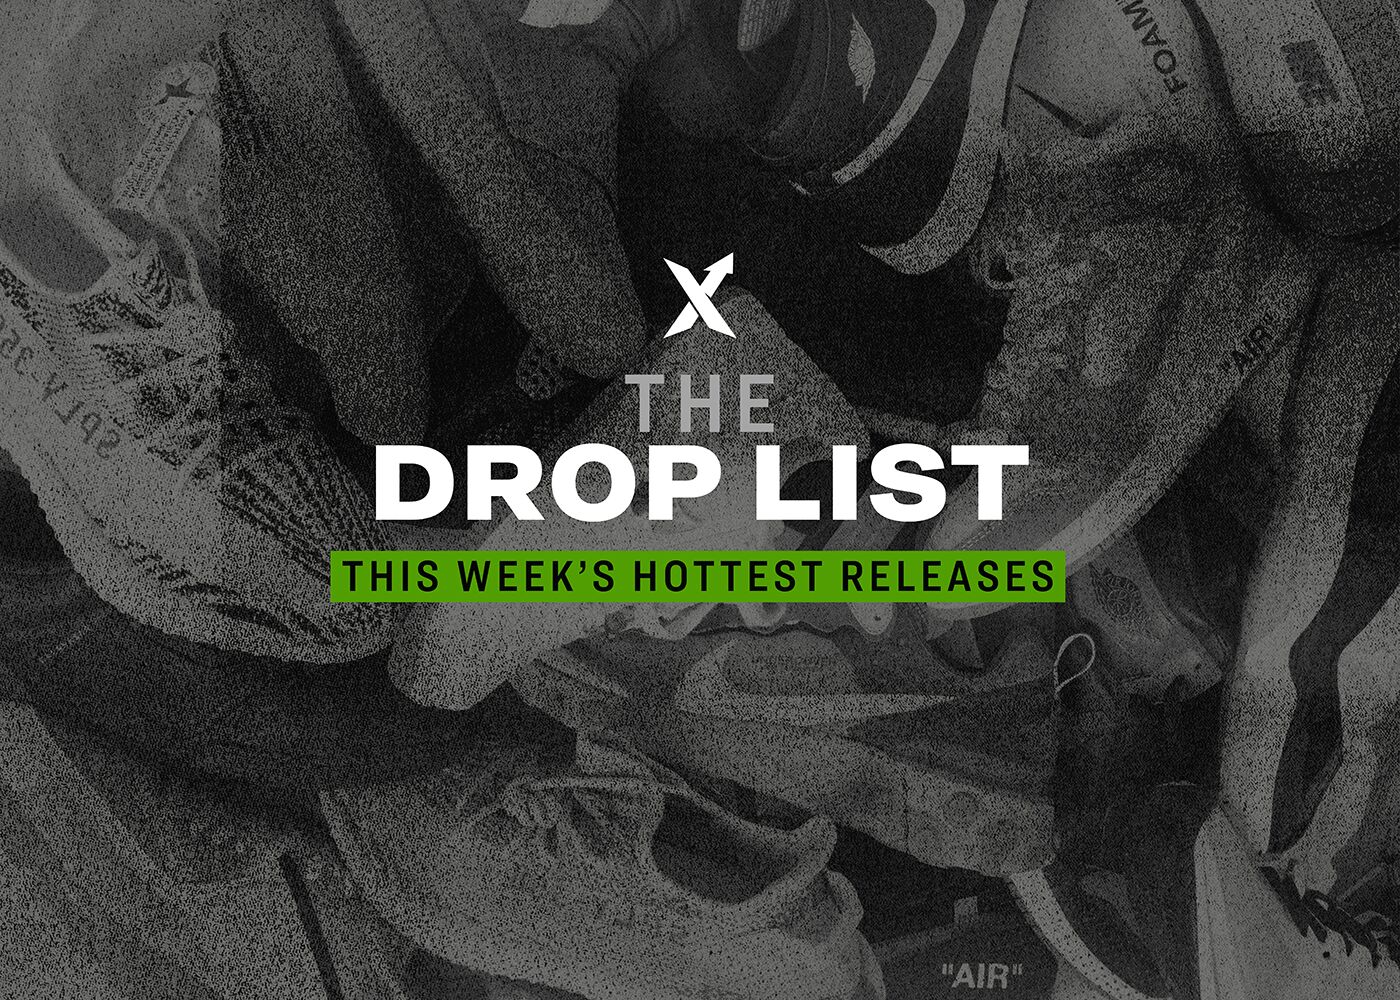 The Ultimate Sneaker & Handbag Matchups of the Season - StockX News